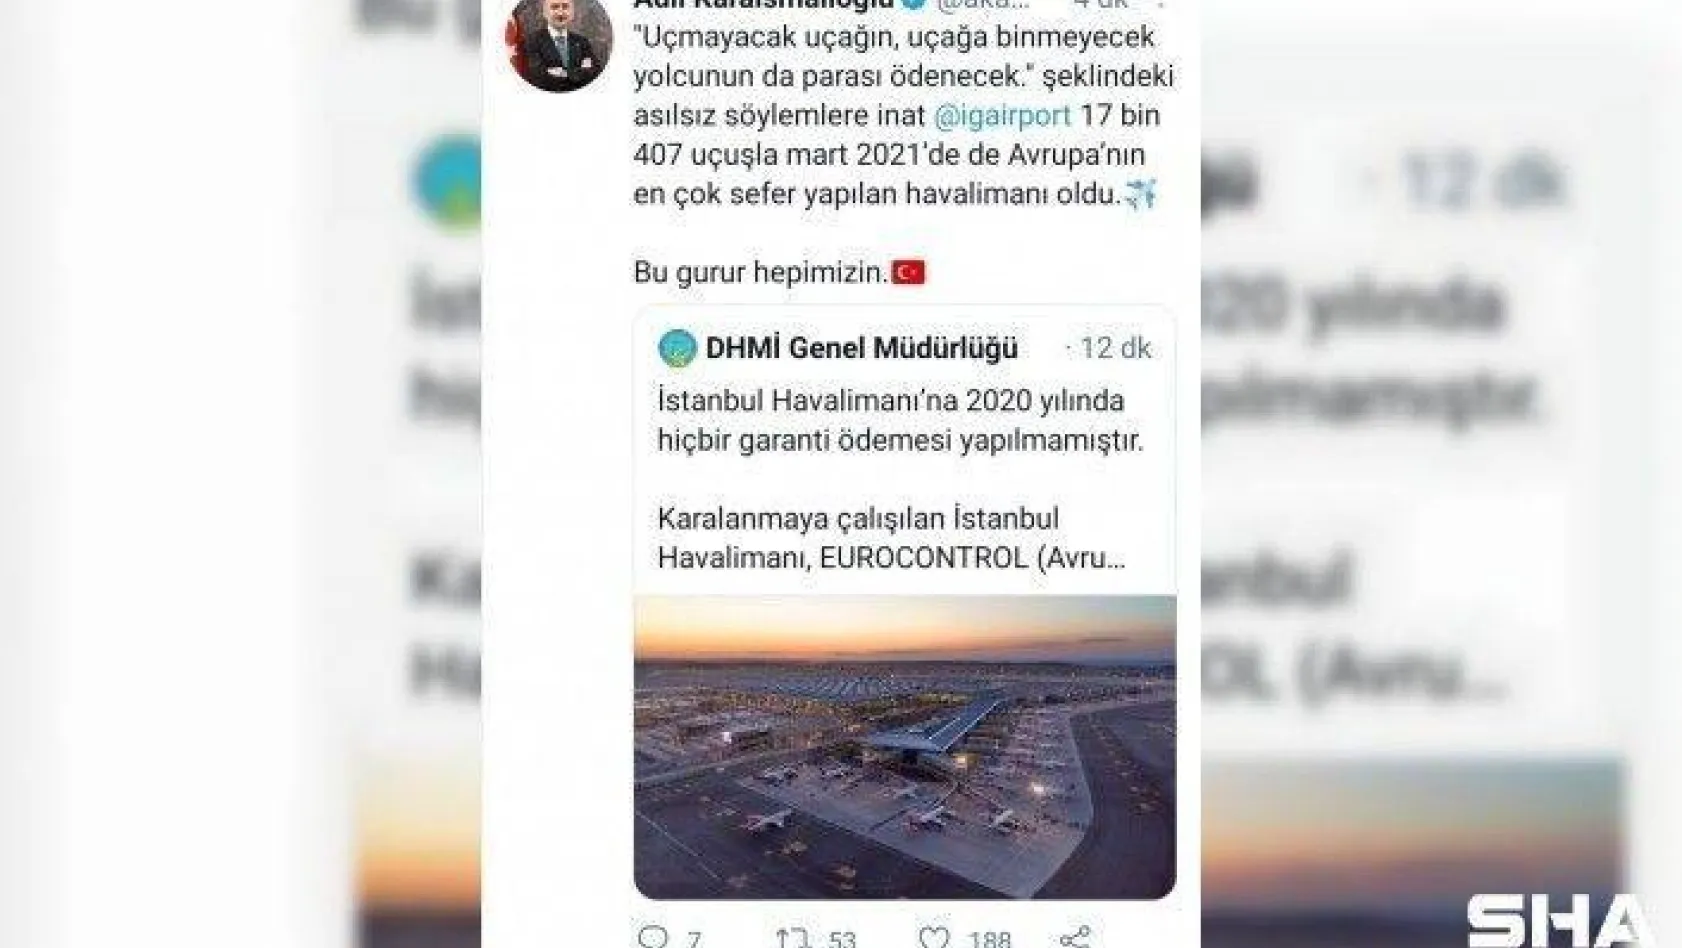 Ulaştırma ve Altyapı Bakanı Adil Karaismailoğlu'ndan İstanbul Havalimanı paylaşımı